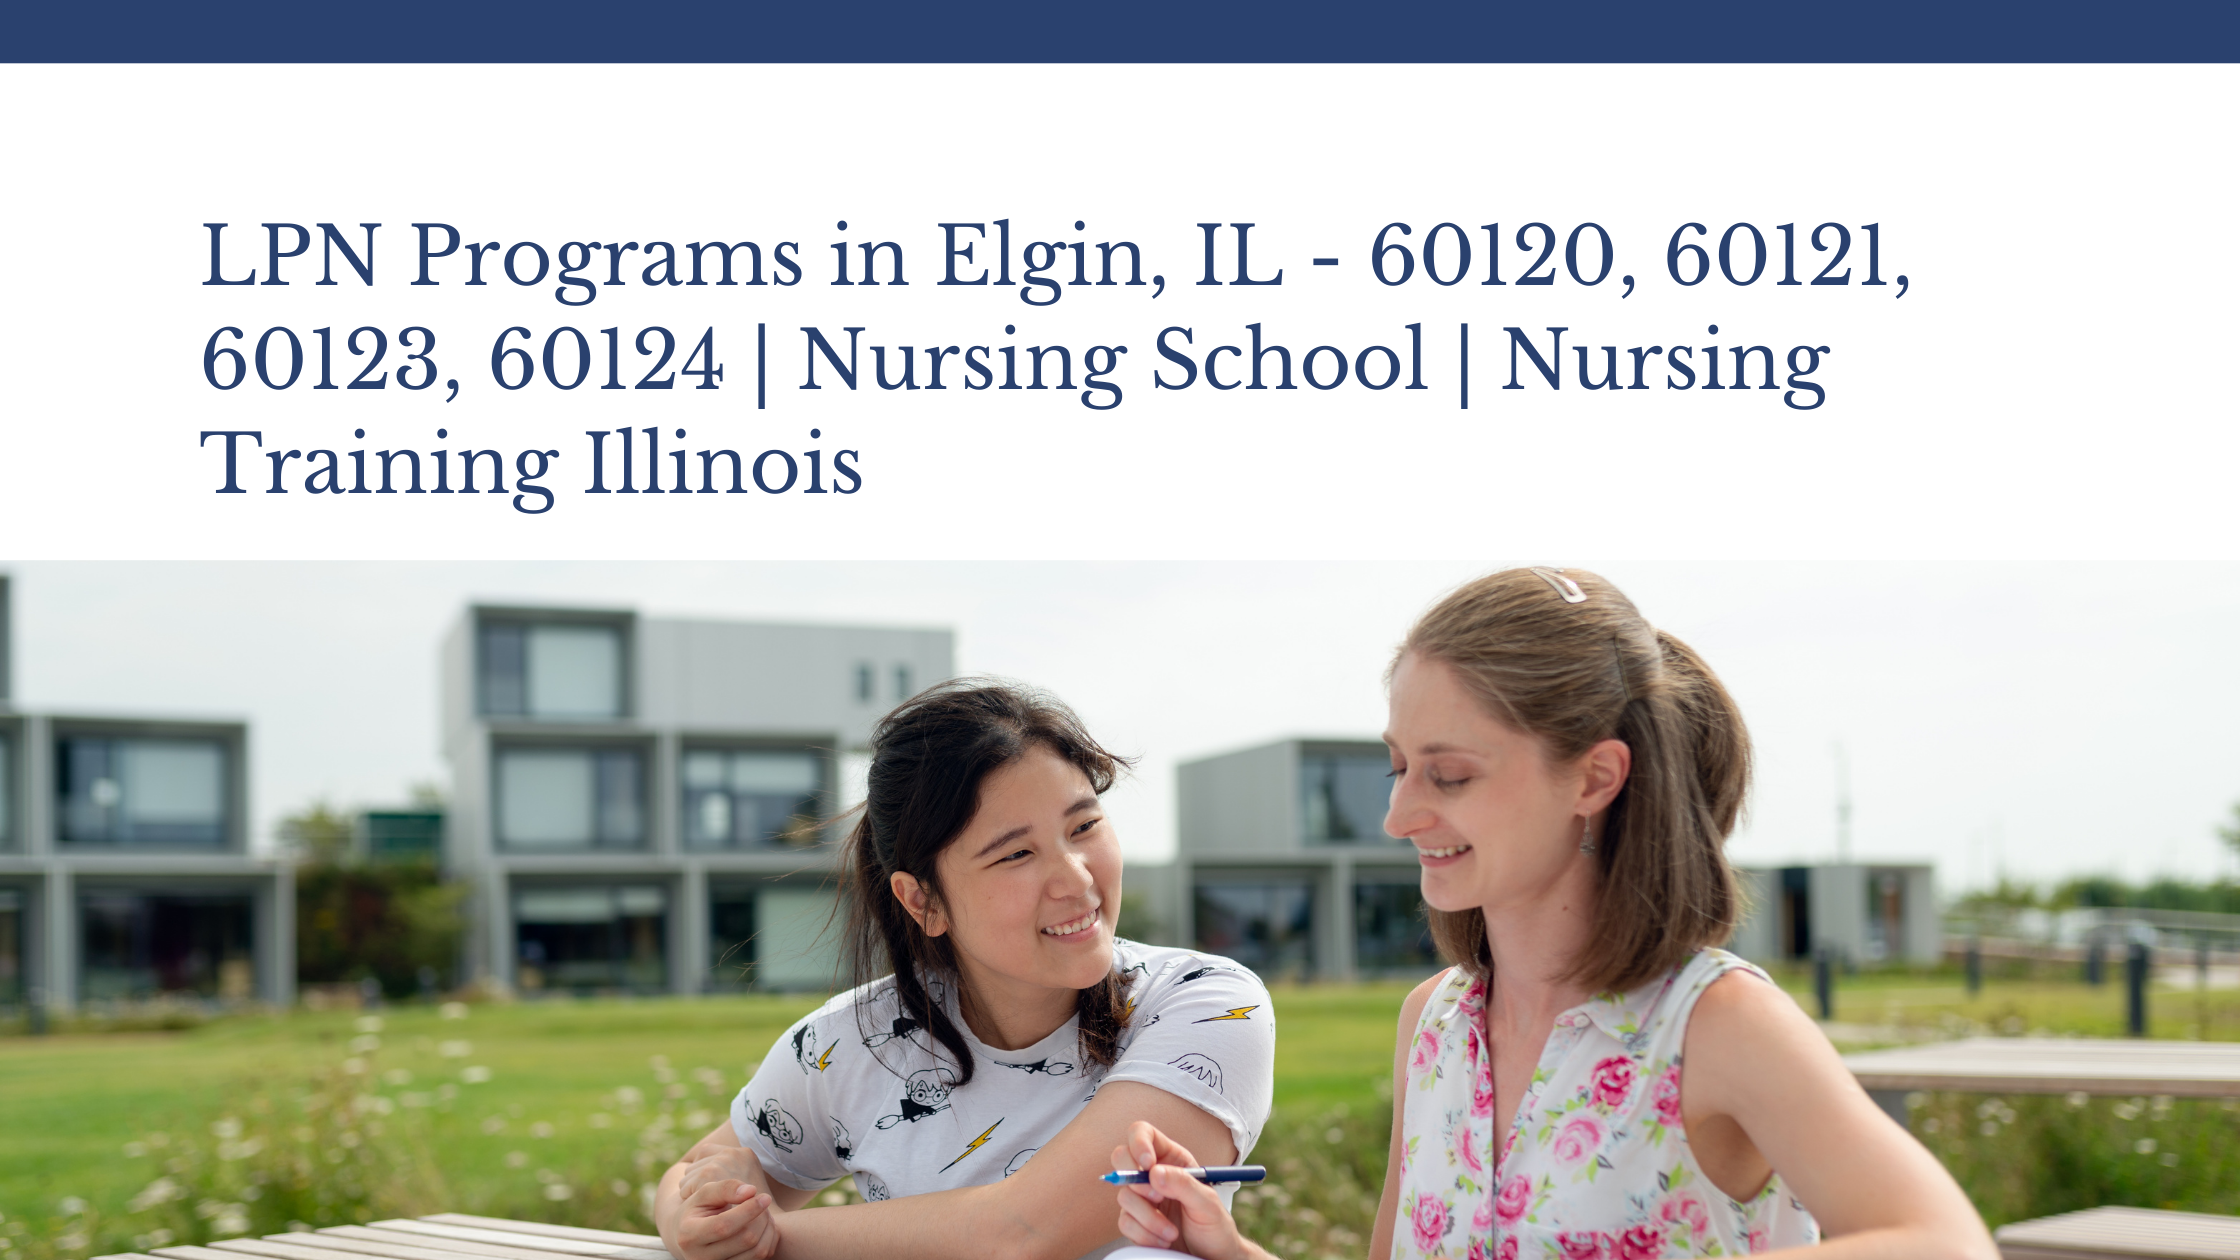 LPN Programs in Elgin, IL – 60120, 60121, 60123, 60124 | Nursing School | Nursing Training Illinois